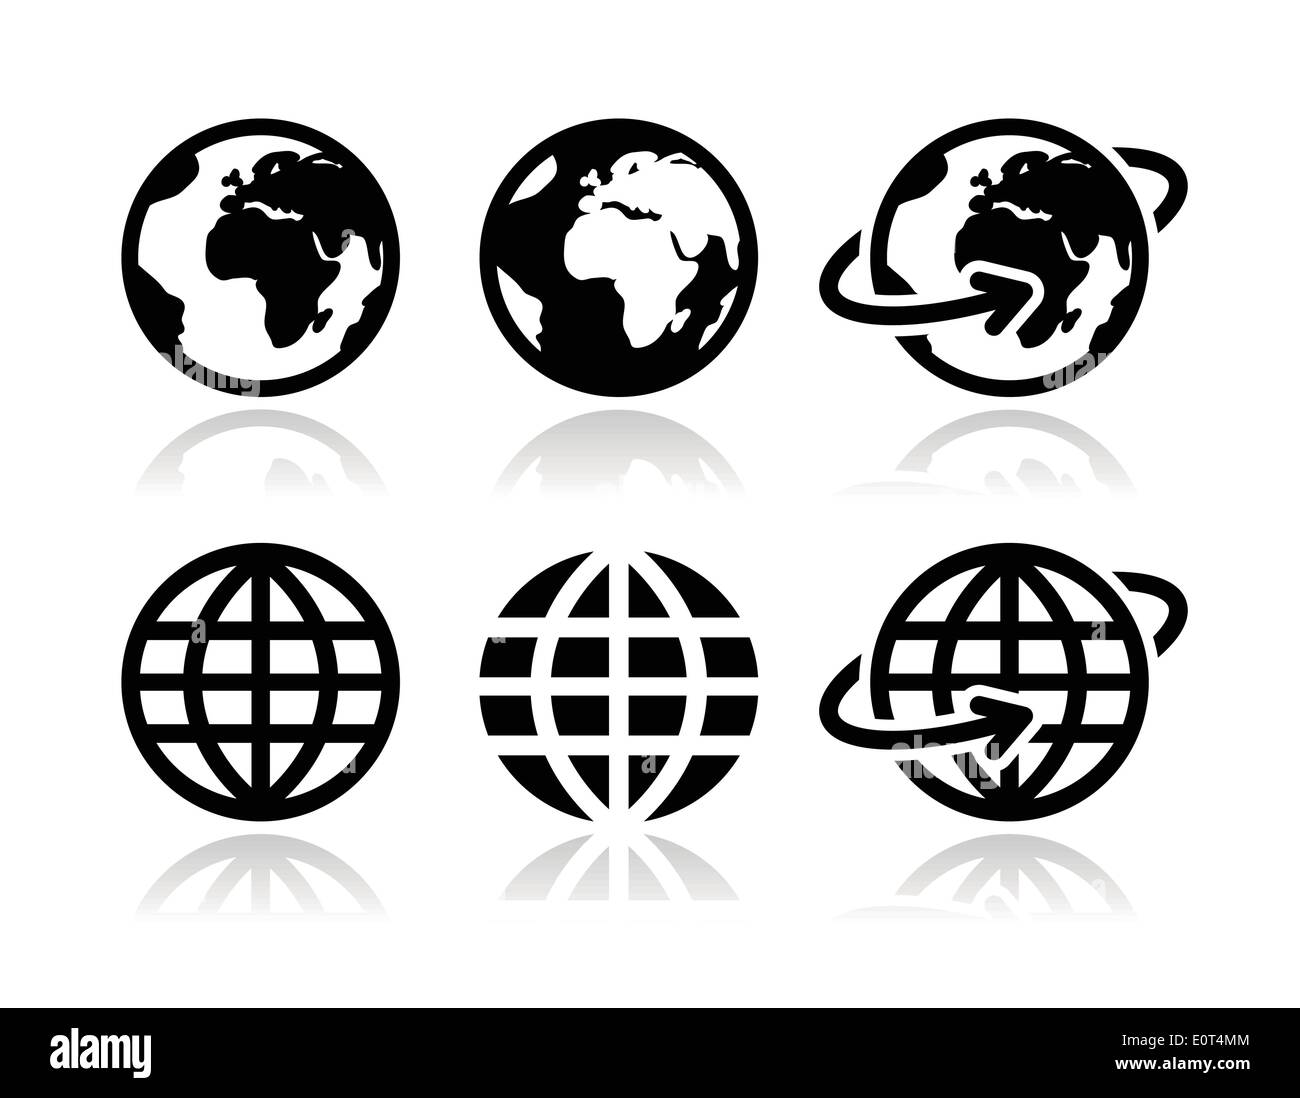 Planète terre vector icons set avec réflexion Illustration de Vecteur